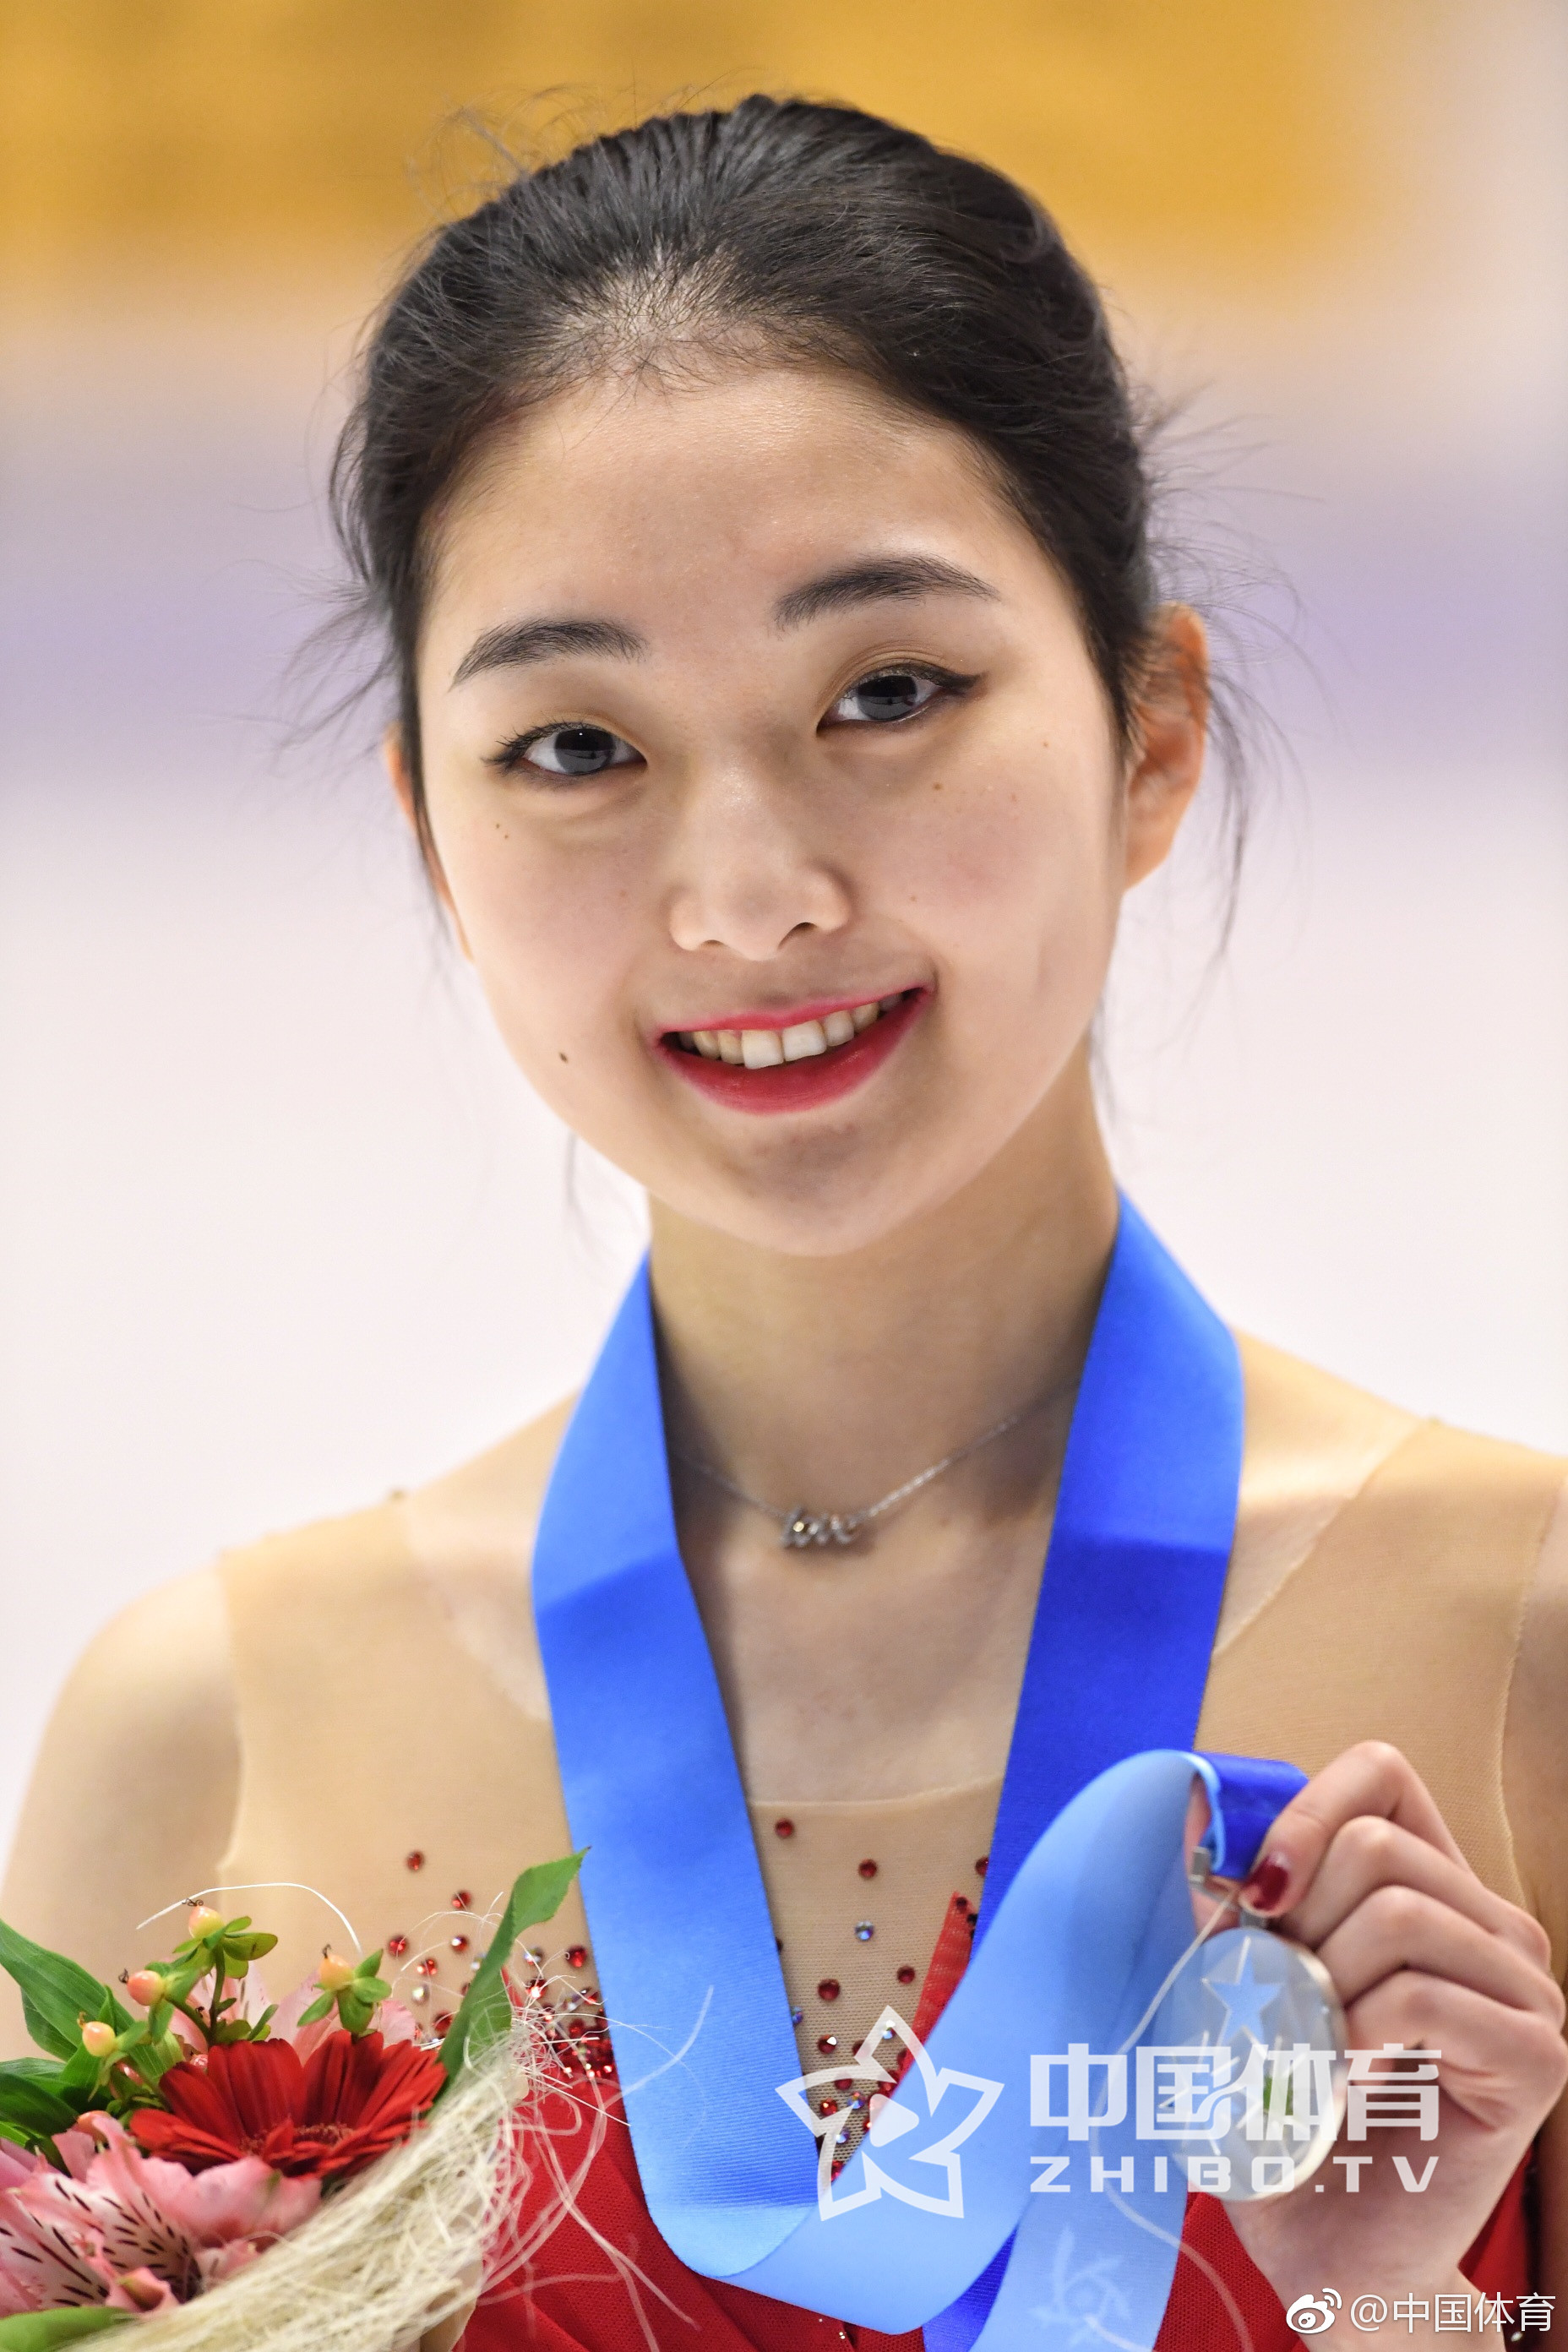 昨晚,中国花样滑冰女子单人滑名将李子君在个人微博发表长文